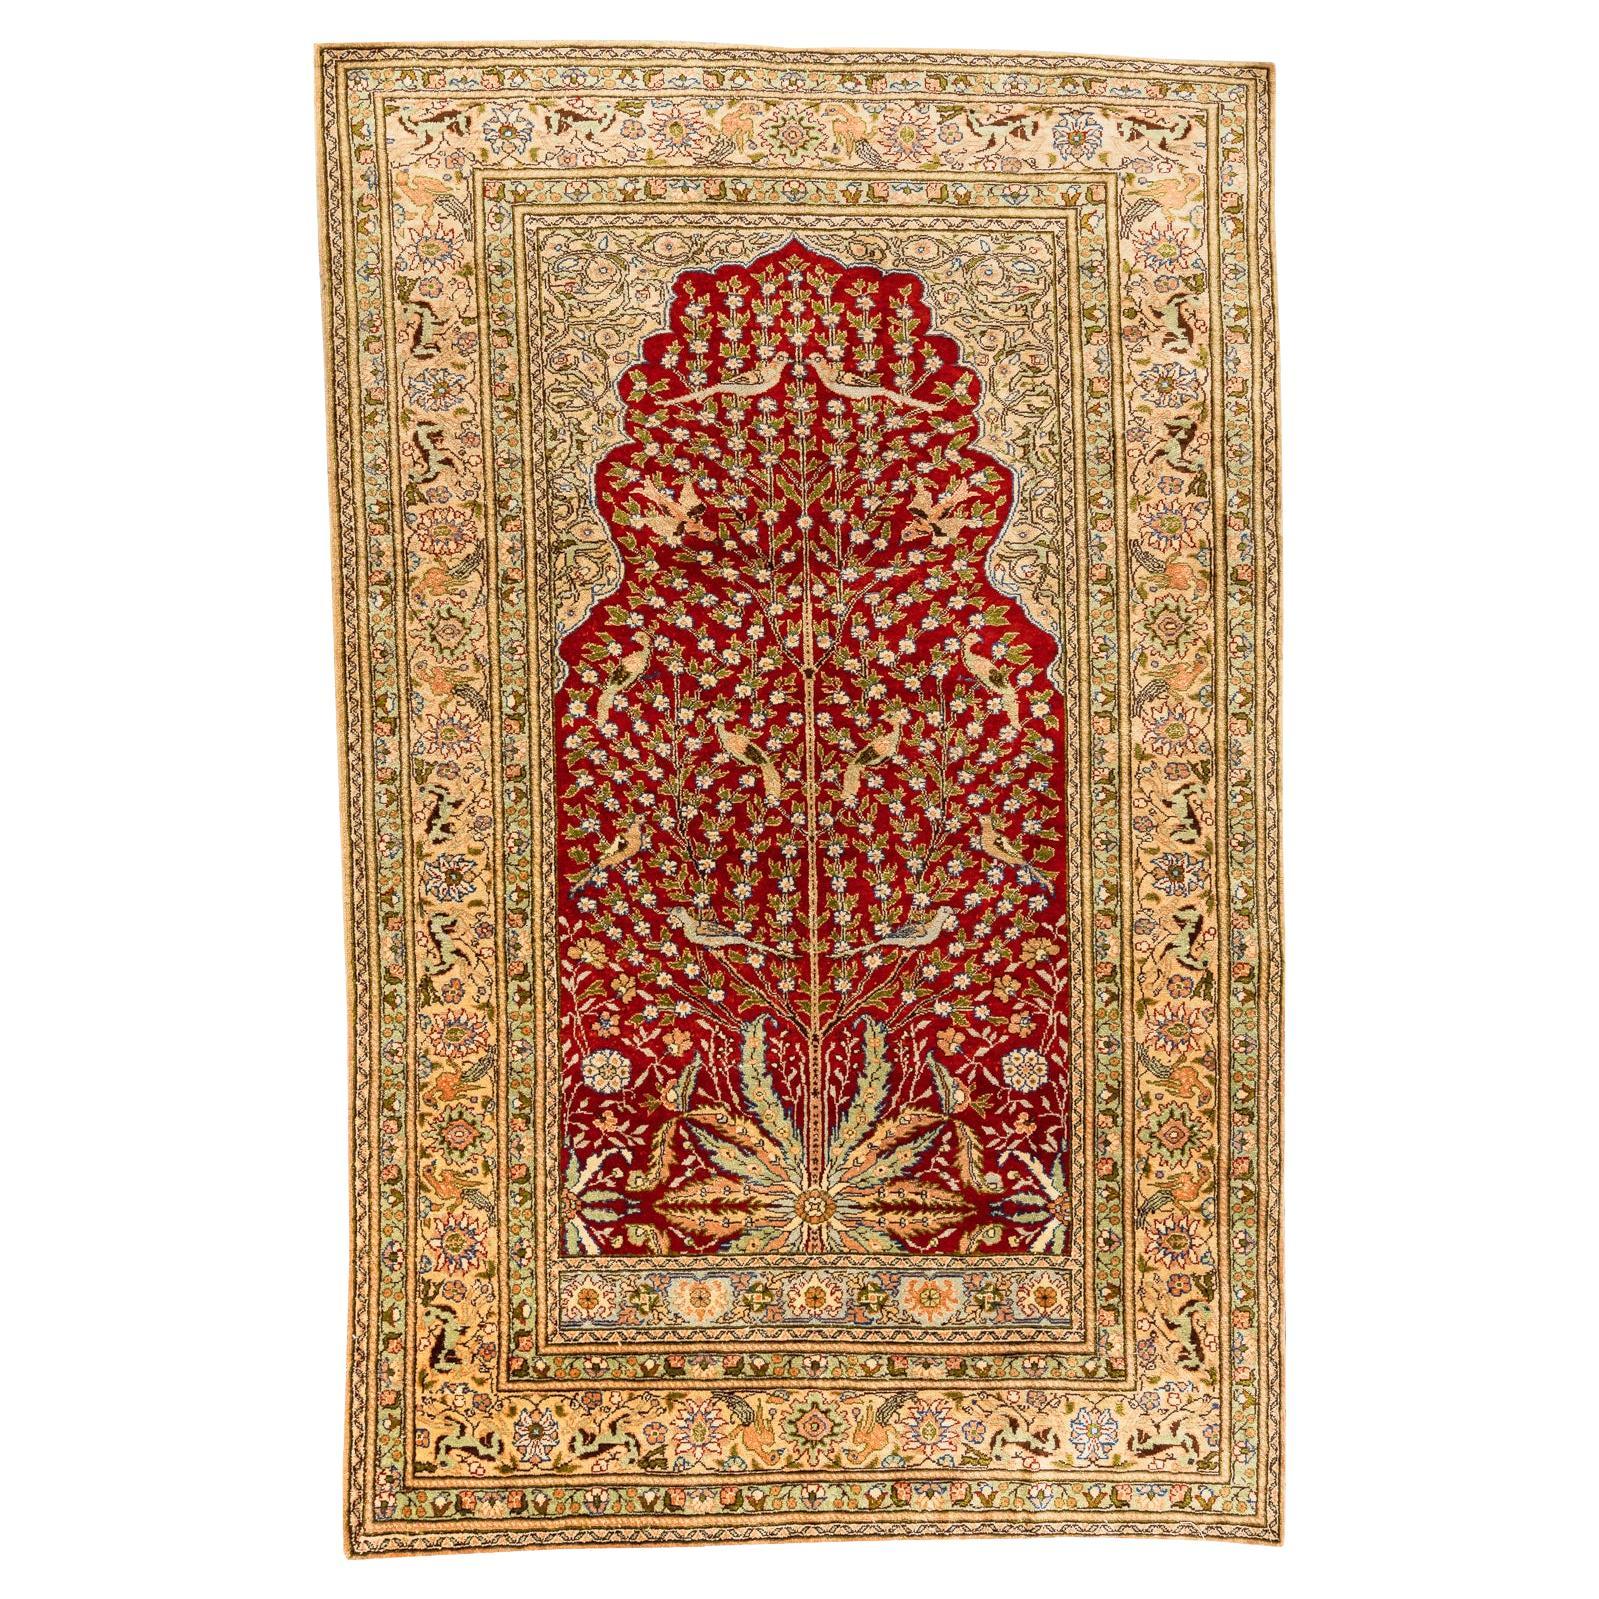 Soie de Kayseri - Anatolie

Ce tapis turc est tissé à la main en pure soie avec un motif d'arbre de vie. Doté d'une niche ogivale, ce tapis en soie est fait pour impressionner. L'arbre de vie s'étend vers le haut avec de longues branches entourées